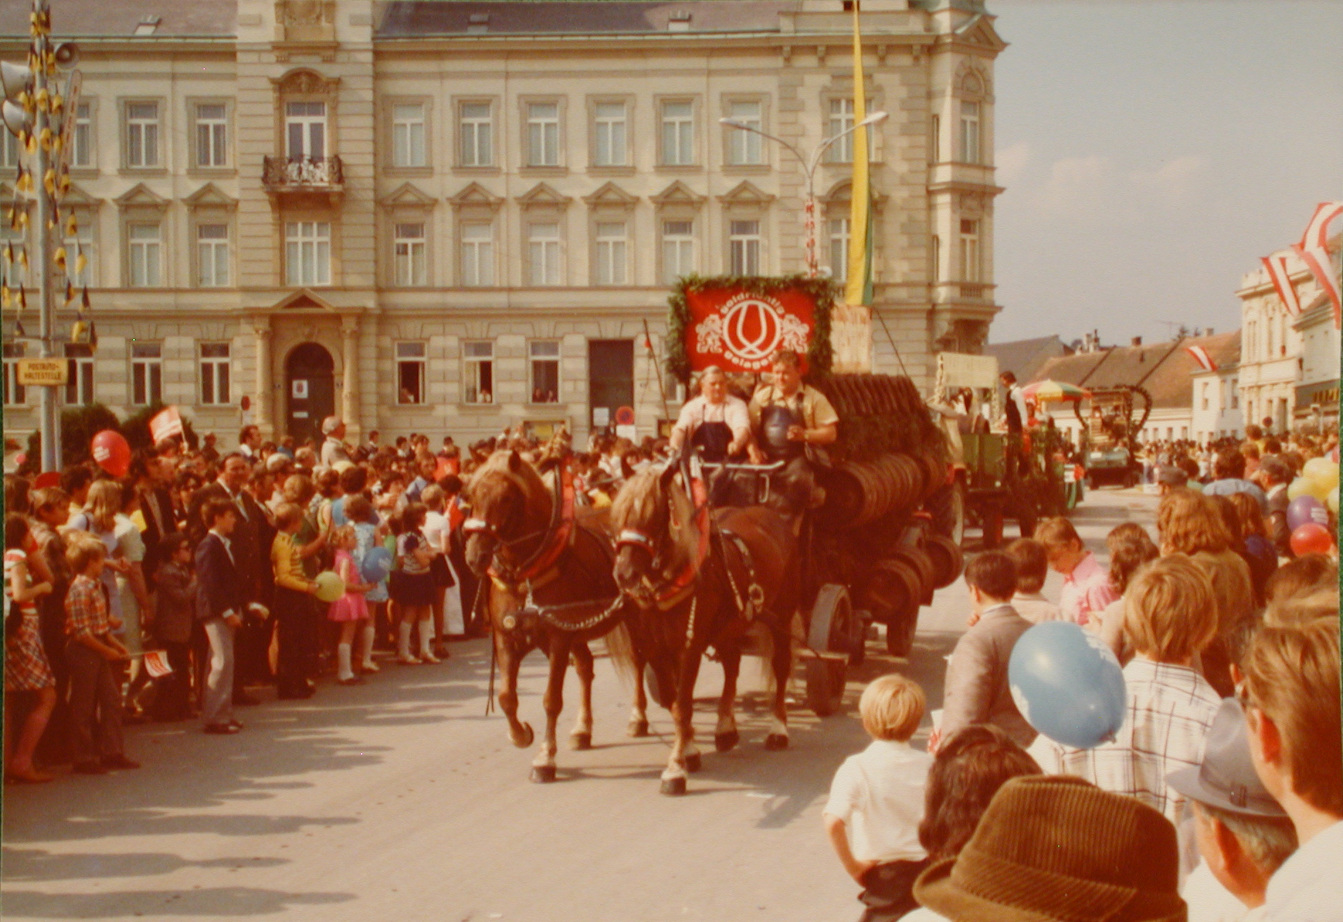 Das Schwechater Bierdepot war beim Festzug aus Anlass 100 Jahre Stadterhebung, im Jahre 1974 mit einer traditionellen Bierkutsche vertreten